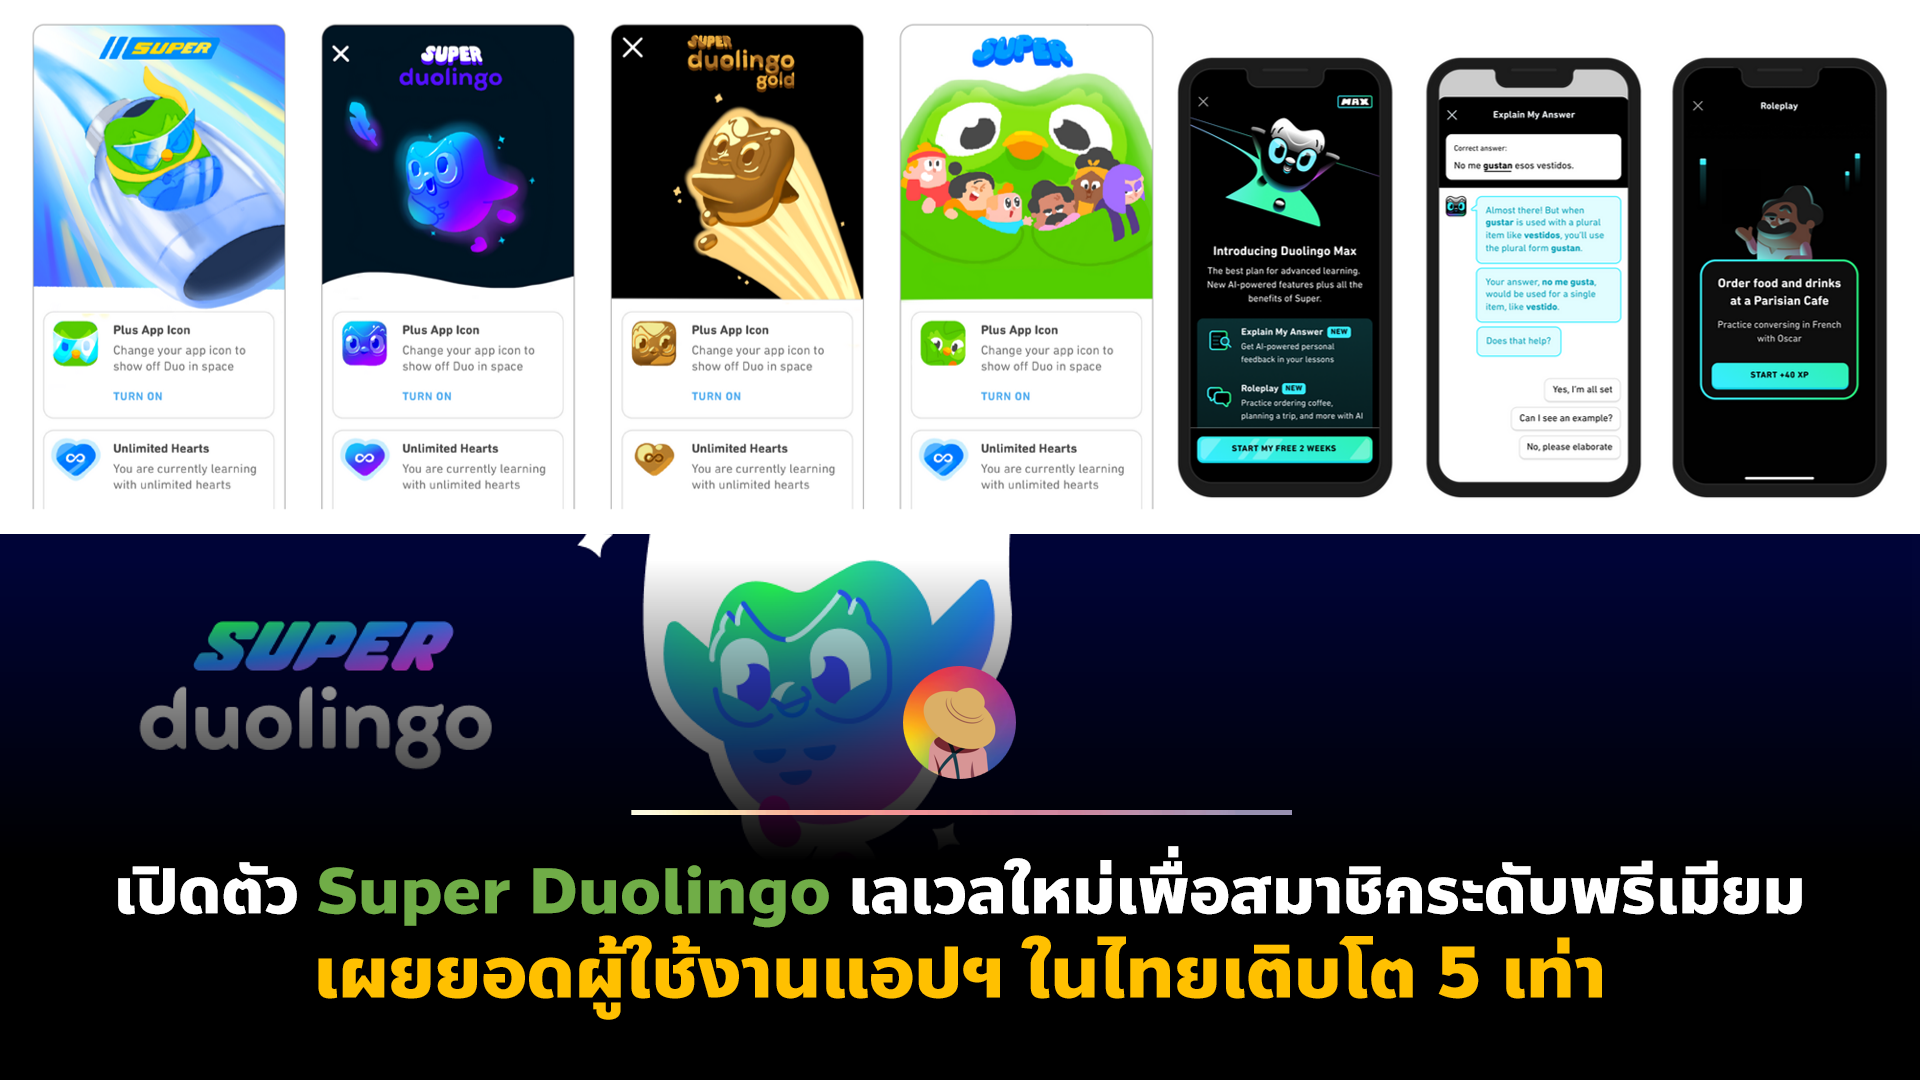 เปิดตัว Super Duolingo เลเวลใหม่เพื่อสมาชิกระดับพรีเมียม เผยยอดผู้ใช้งานแอปฯ ในไทยเติบโต 5 เท่า